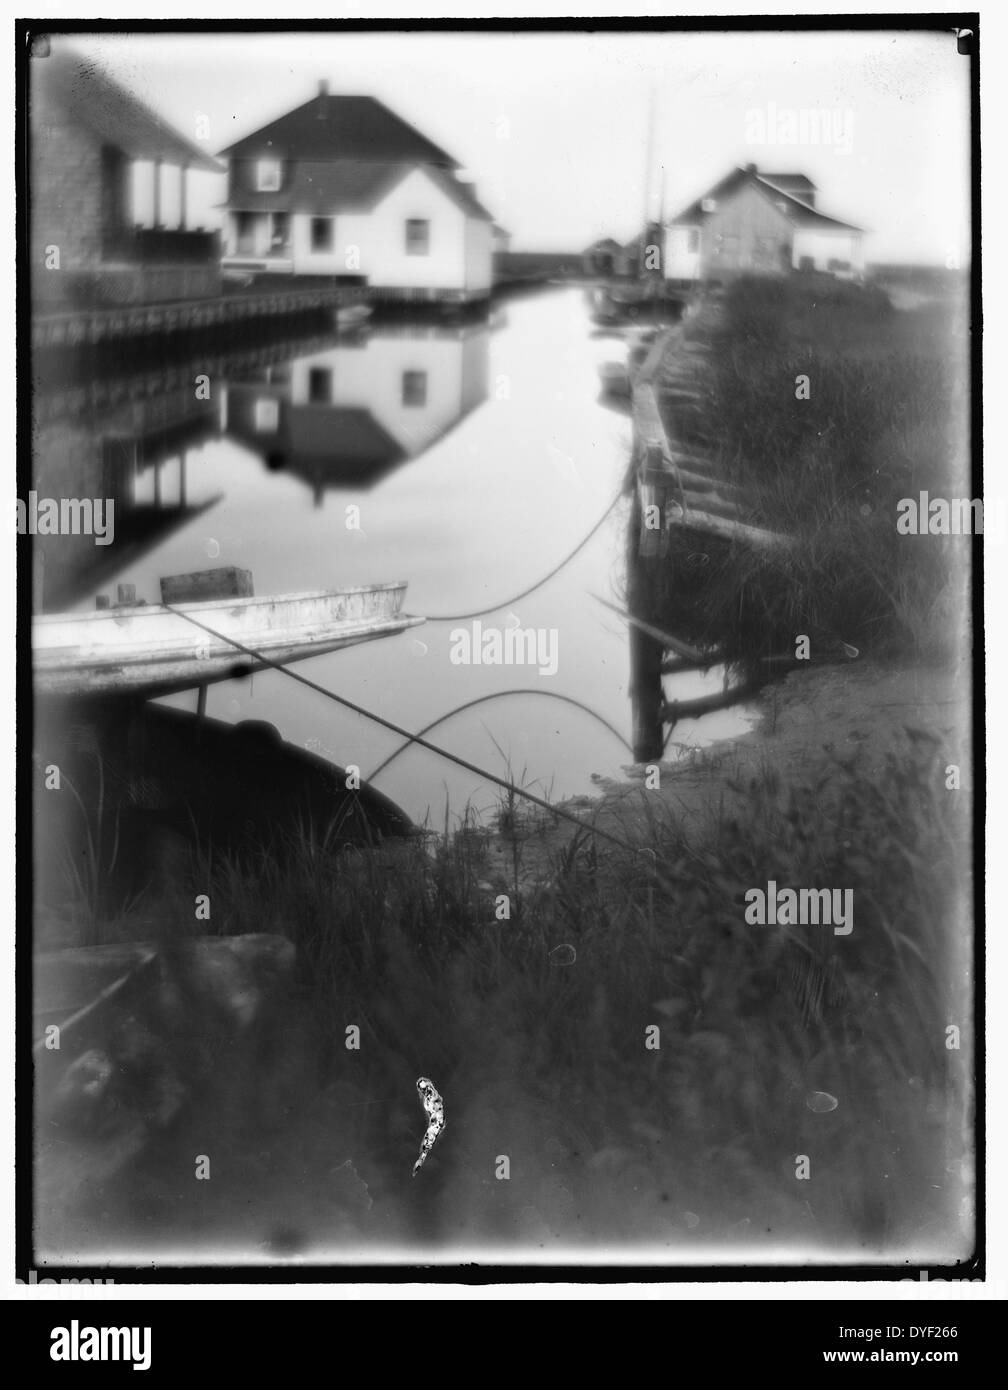 Bungalows au bord de l'eau dans la région de Oceanside. de Gertrude Käsebier 1852-1934, photographe. En date du 1905. Petit passage de l'eau bordée de maisons et de quais. Banque D'Images